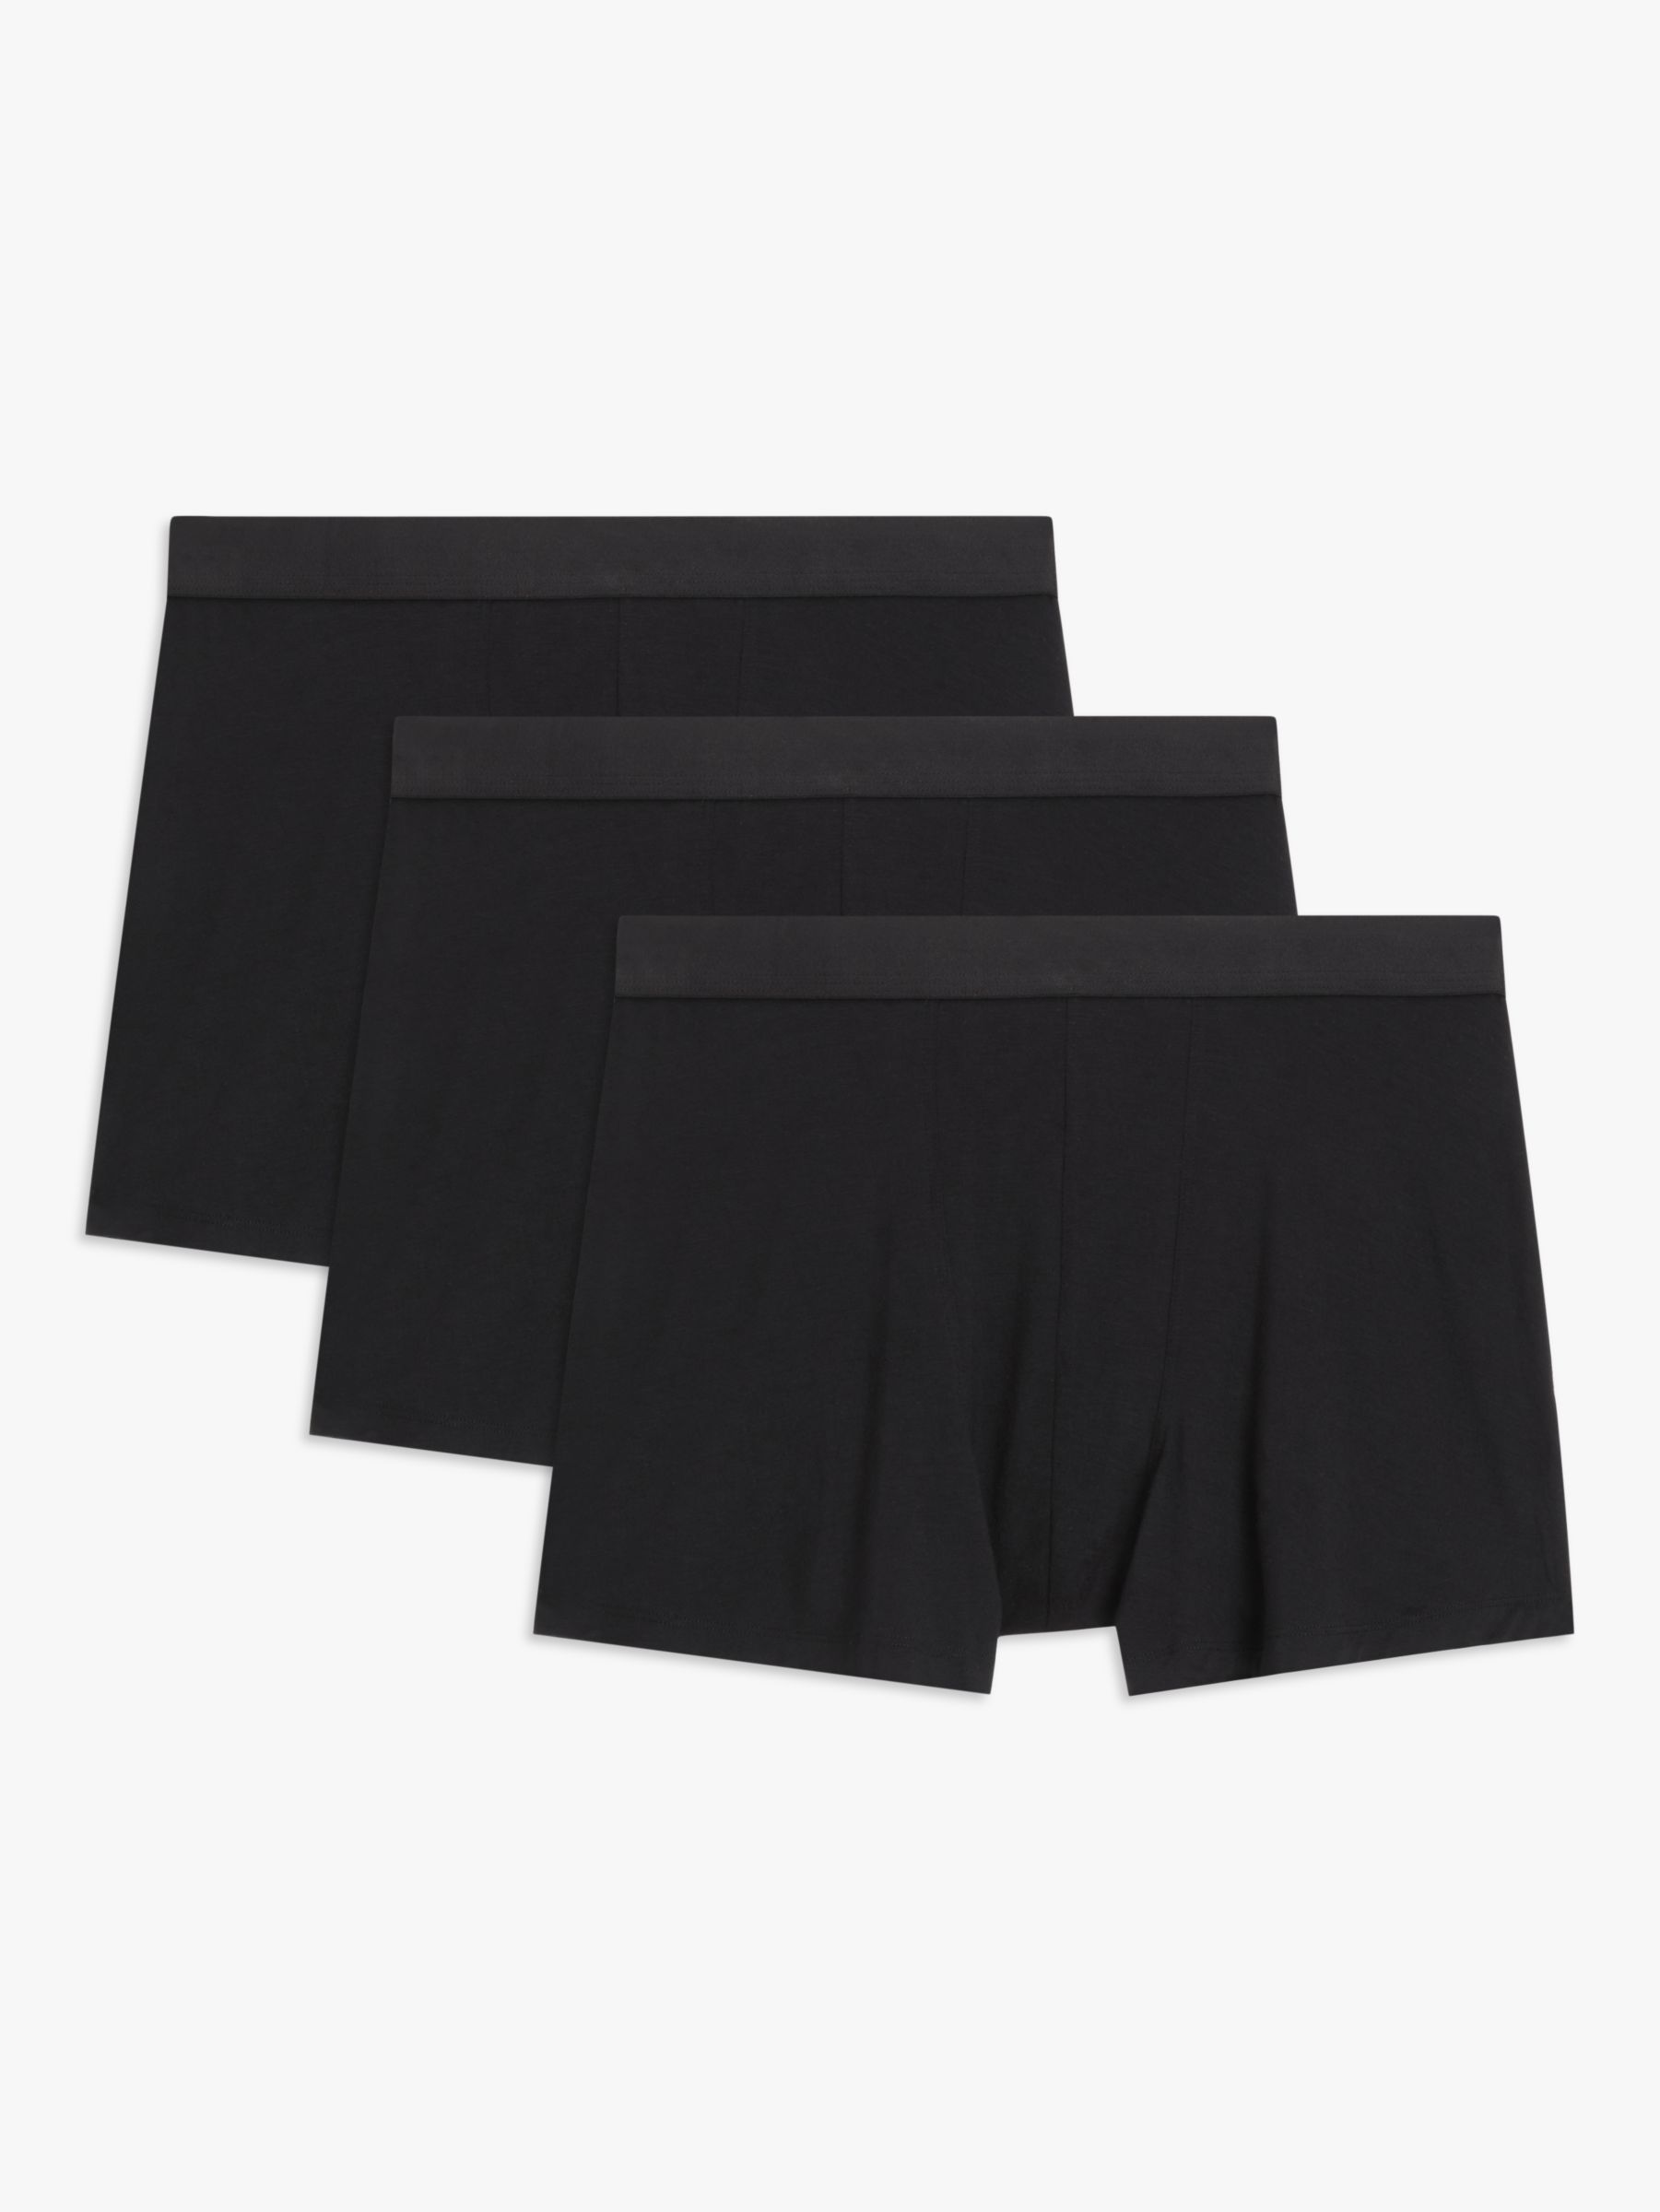 Calvin Klein Men's Ultra Soft Modal Trunks, Black, Small 